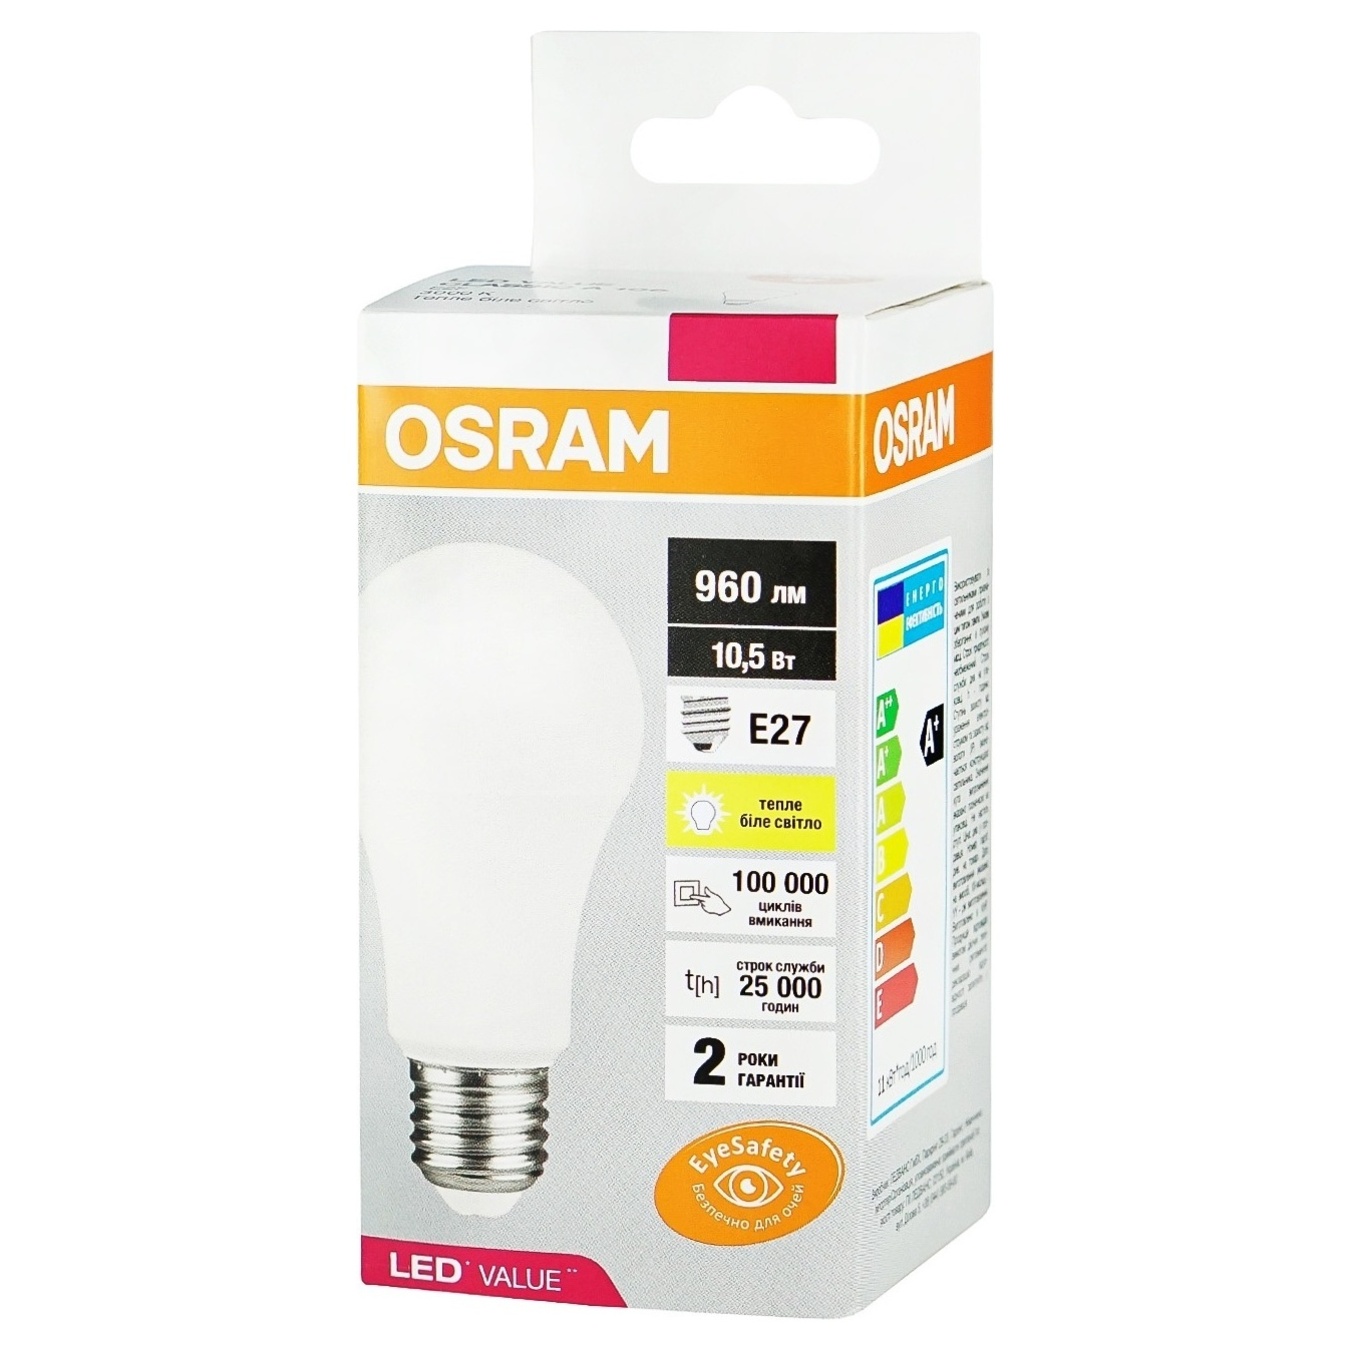 Osram LED LED lamp 10.5W 2700K E27